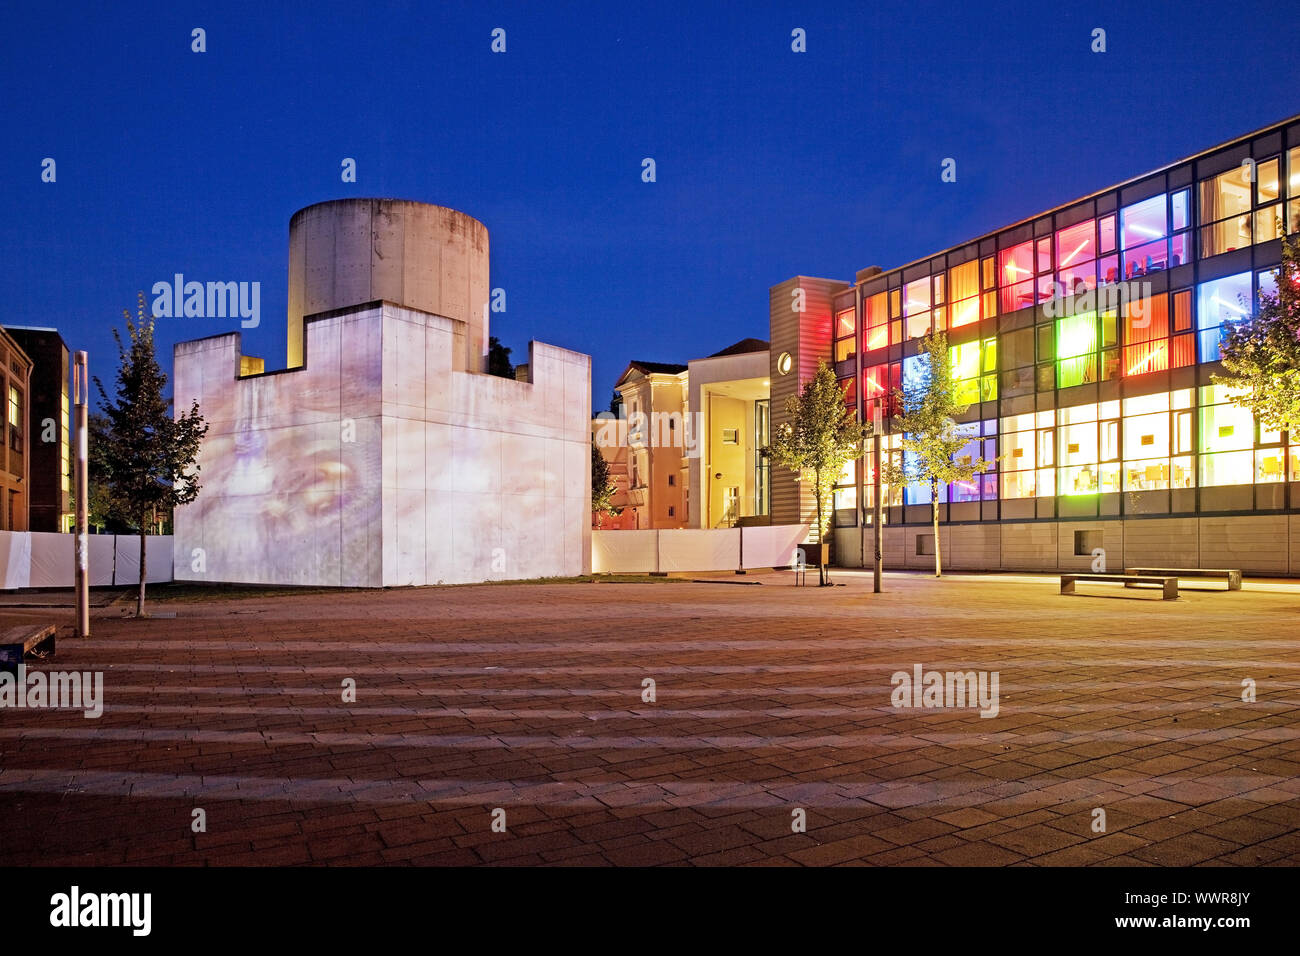 illuminated square Platz der Kulturen during event Stadtlichter, Unna, Ruhr Area, Germany, Europe Stock Photo